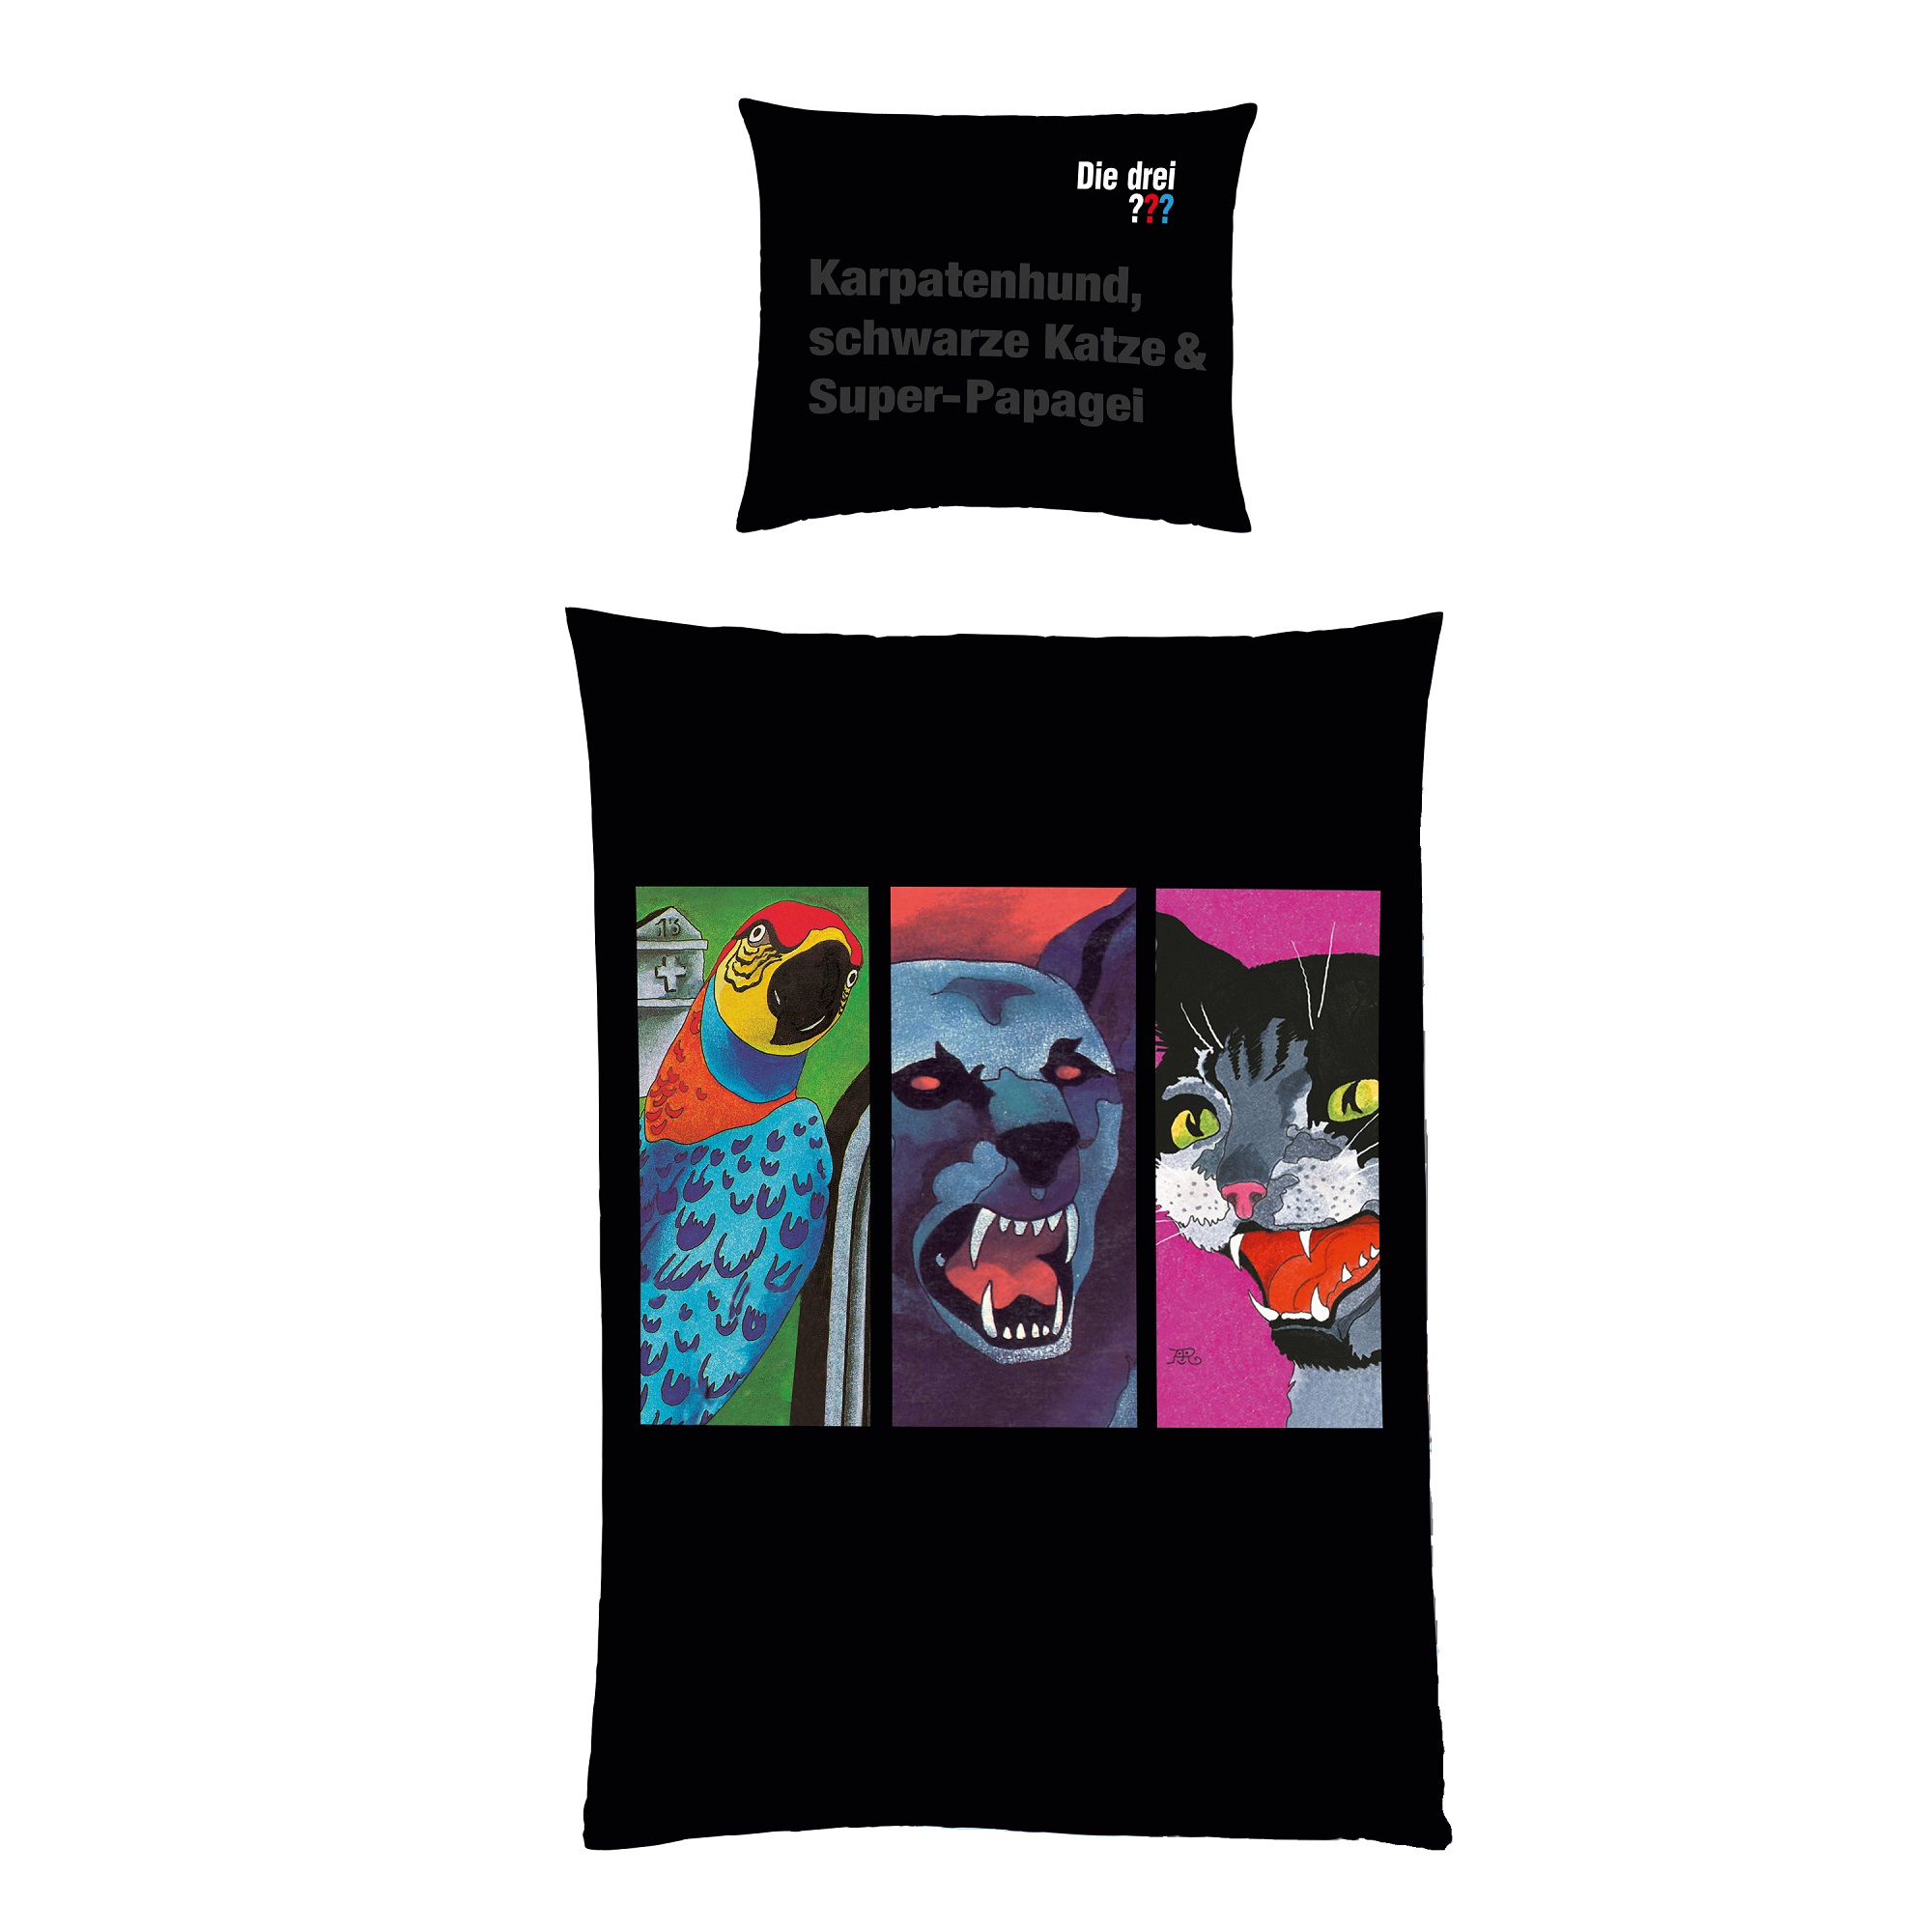 Detailansicht Vorderseite Bettdecke mit Tieren Super-Papagei, Karpatenhund und schwarzer Katze im 3-er Porträt nebeneinander vor schwarzem Grund